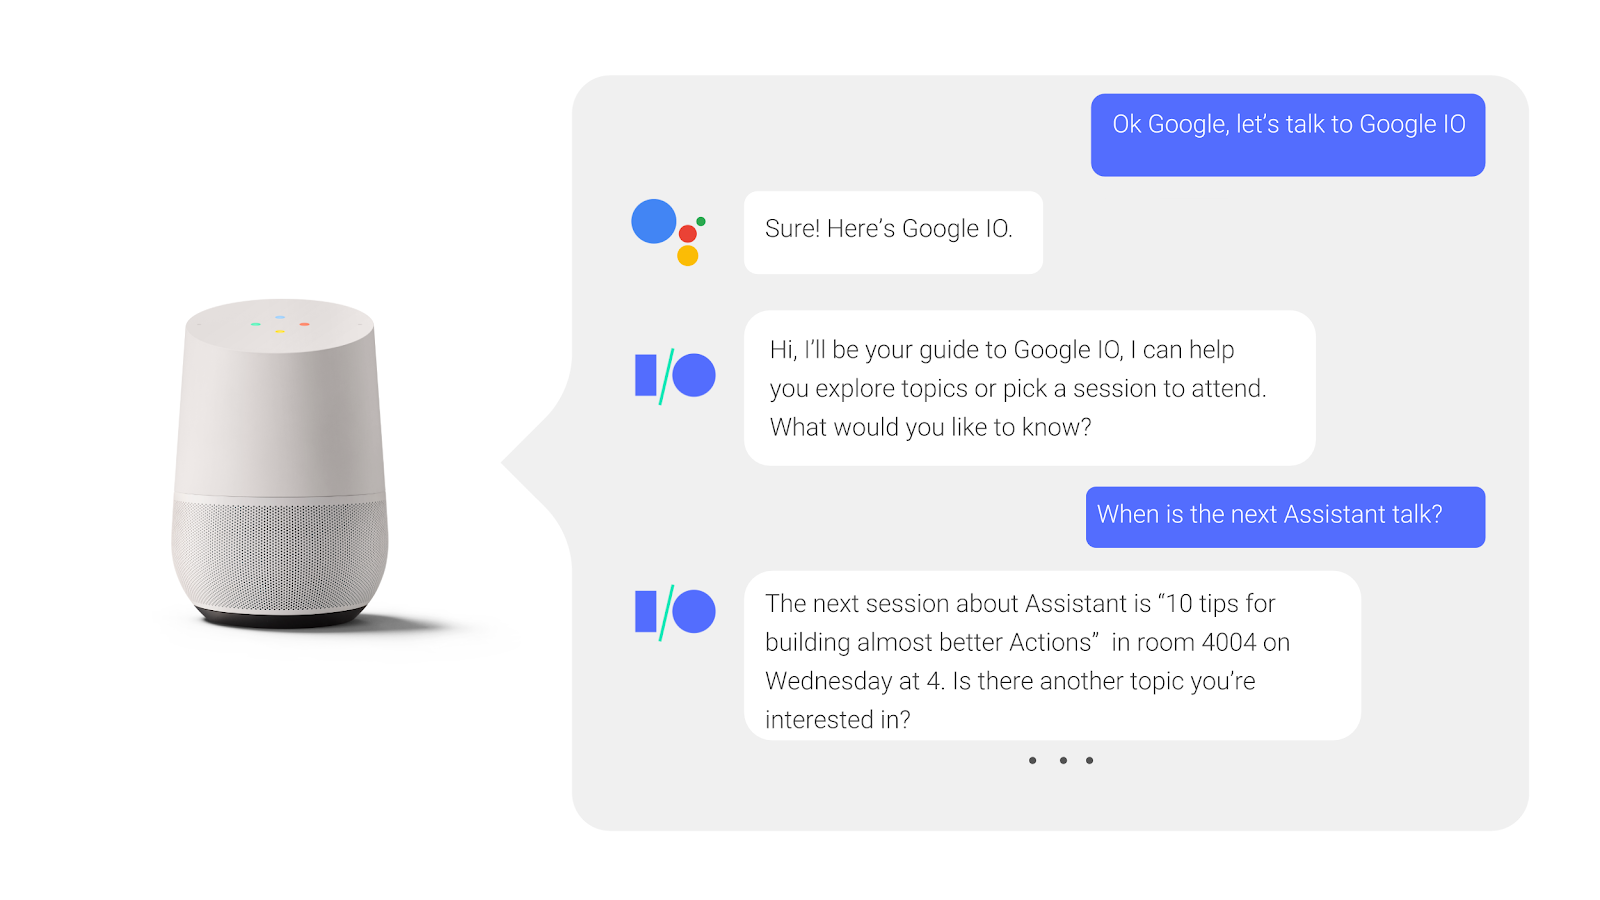 Google アシスタントとの双方向の会話で、ユーザーが会議セッションの開催について質問し、その回答を受け取ります。